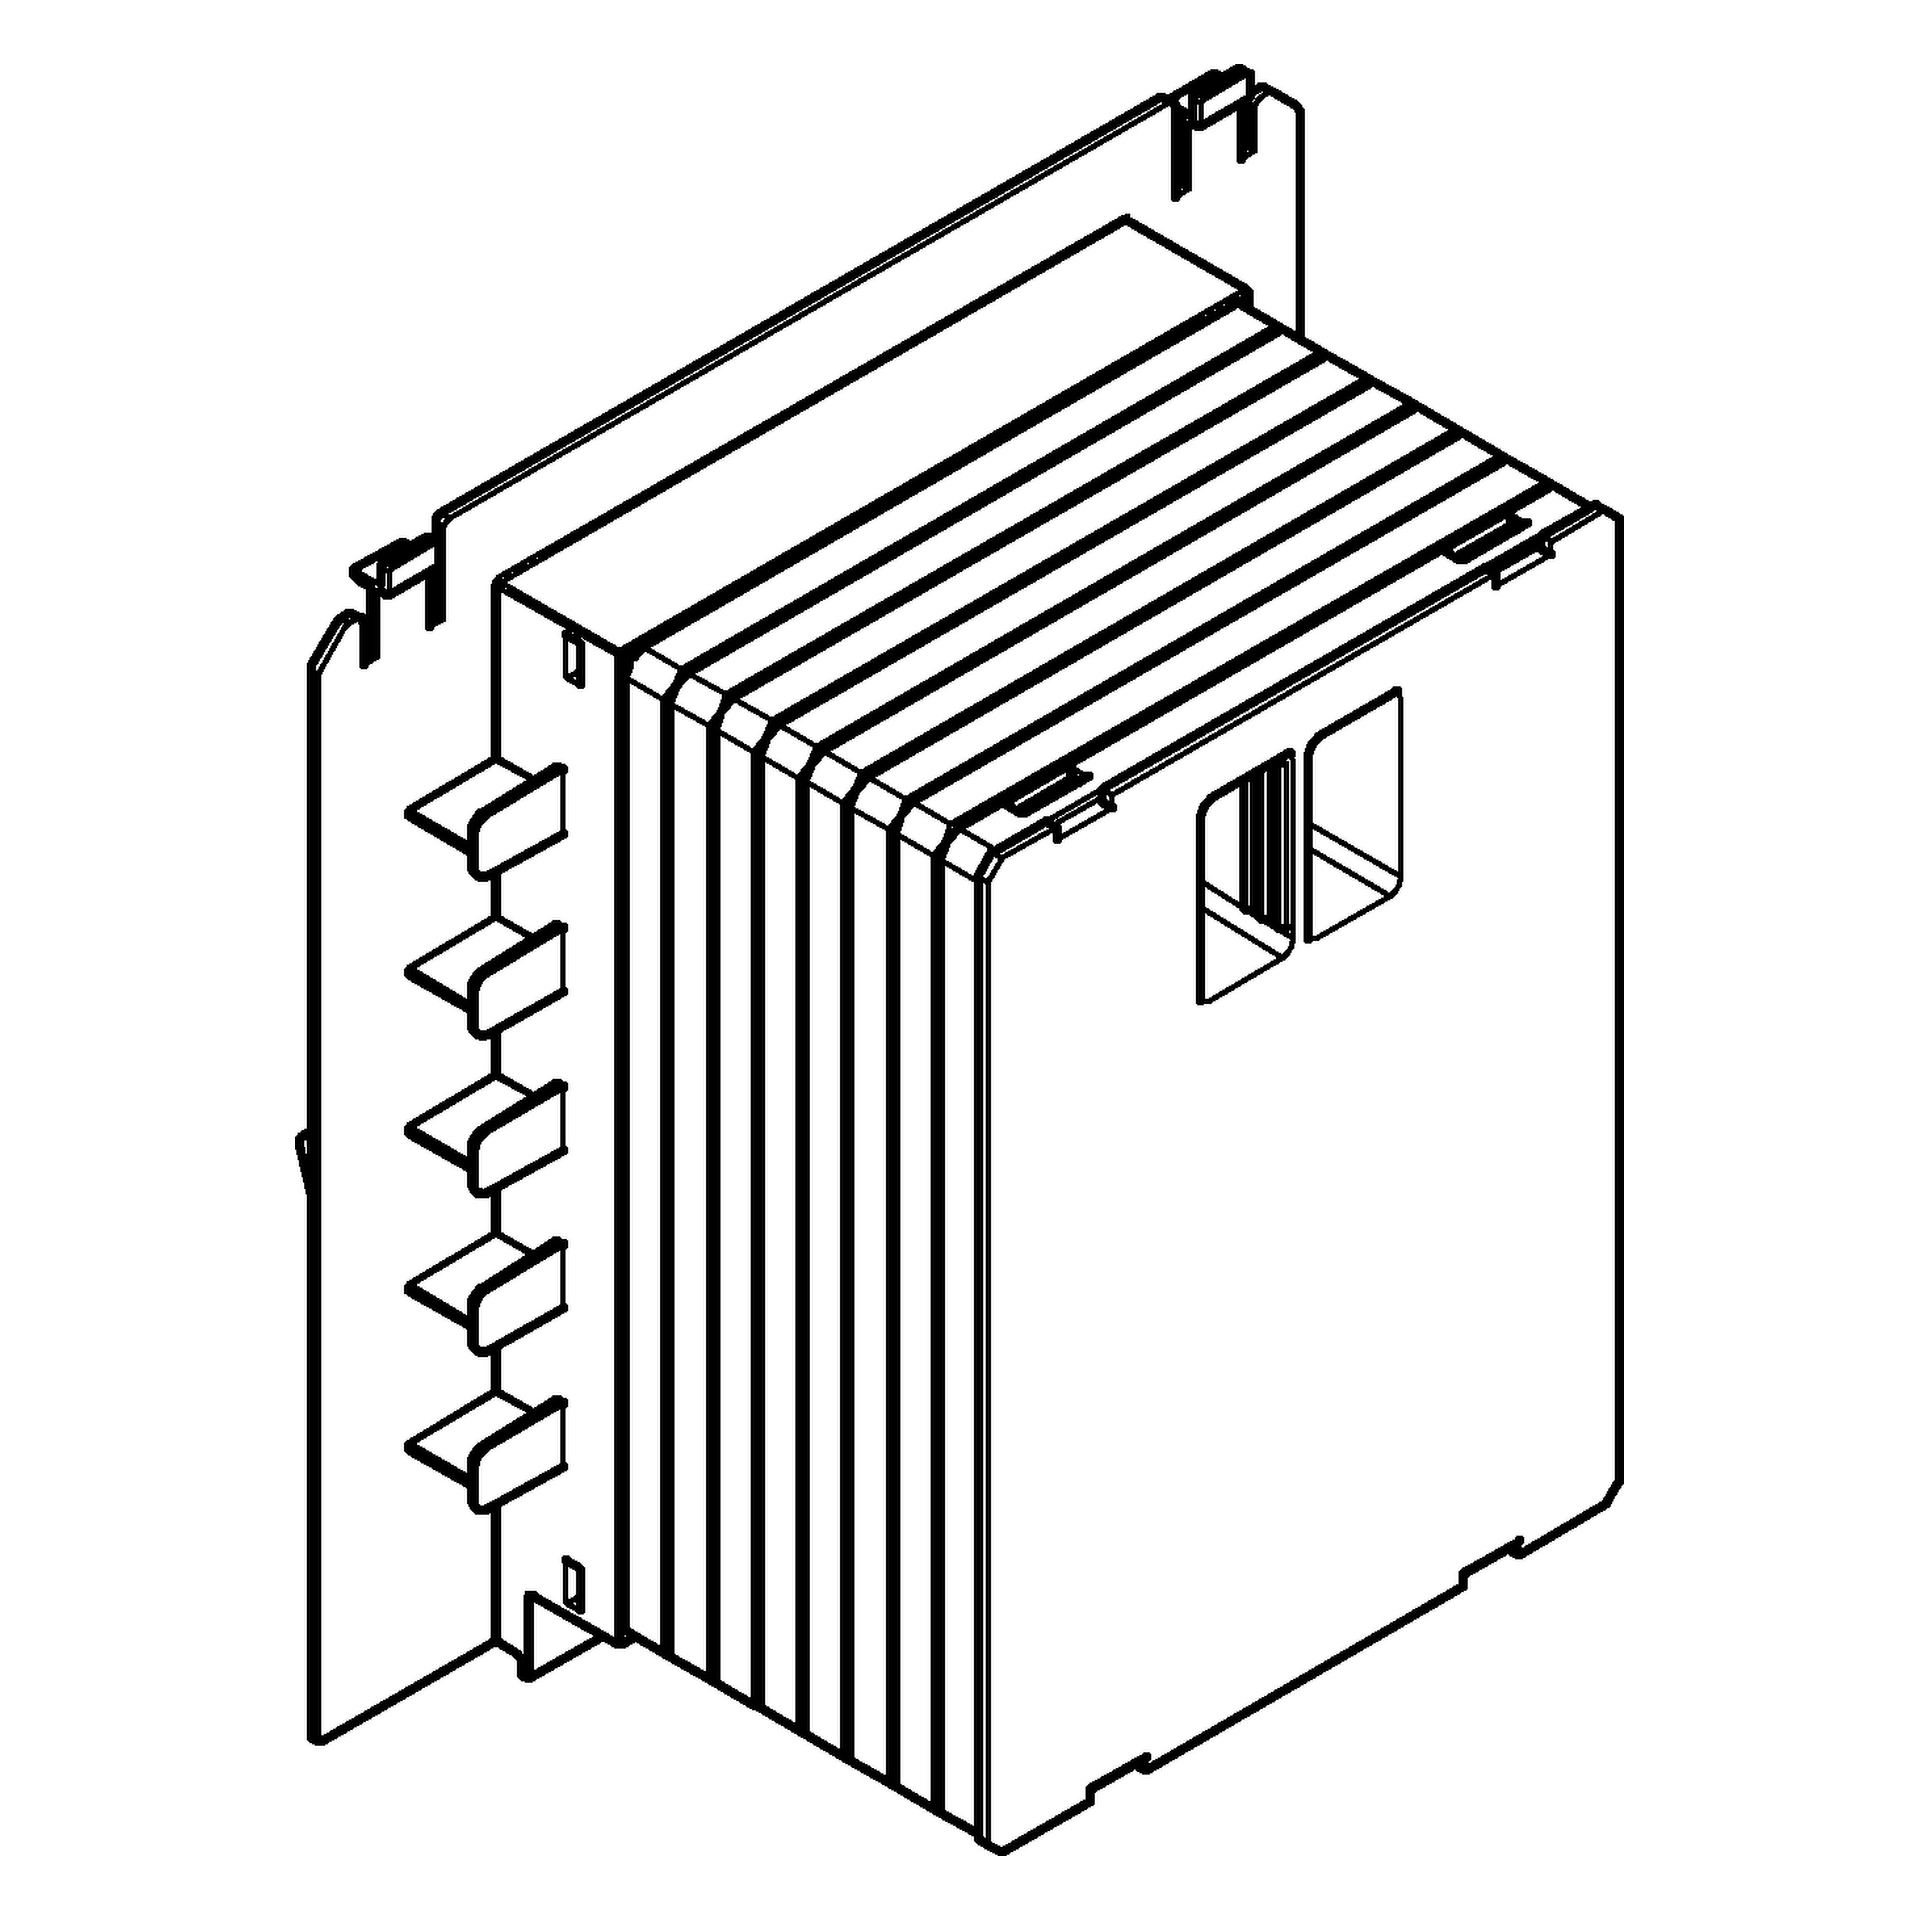 Revisionsschacht 40911, für kleine WC-Betätigungen, zur Kombination mit Rapid SL und Uniset GD 2 Spülkasten